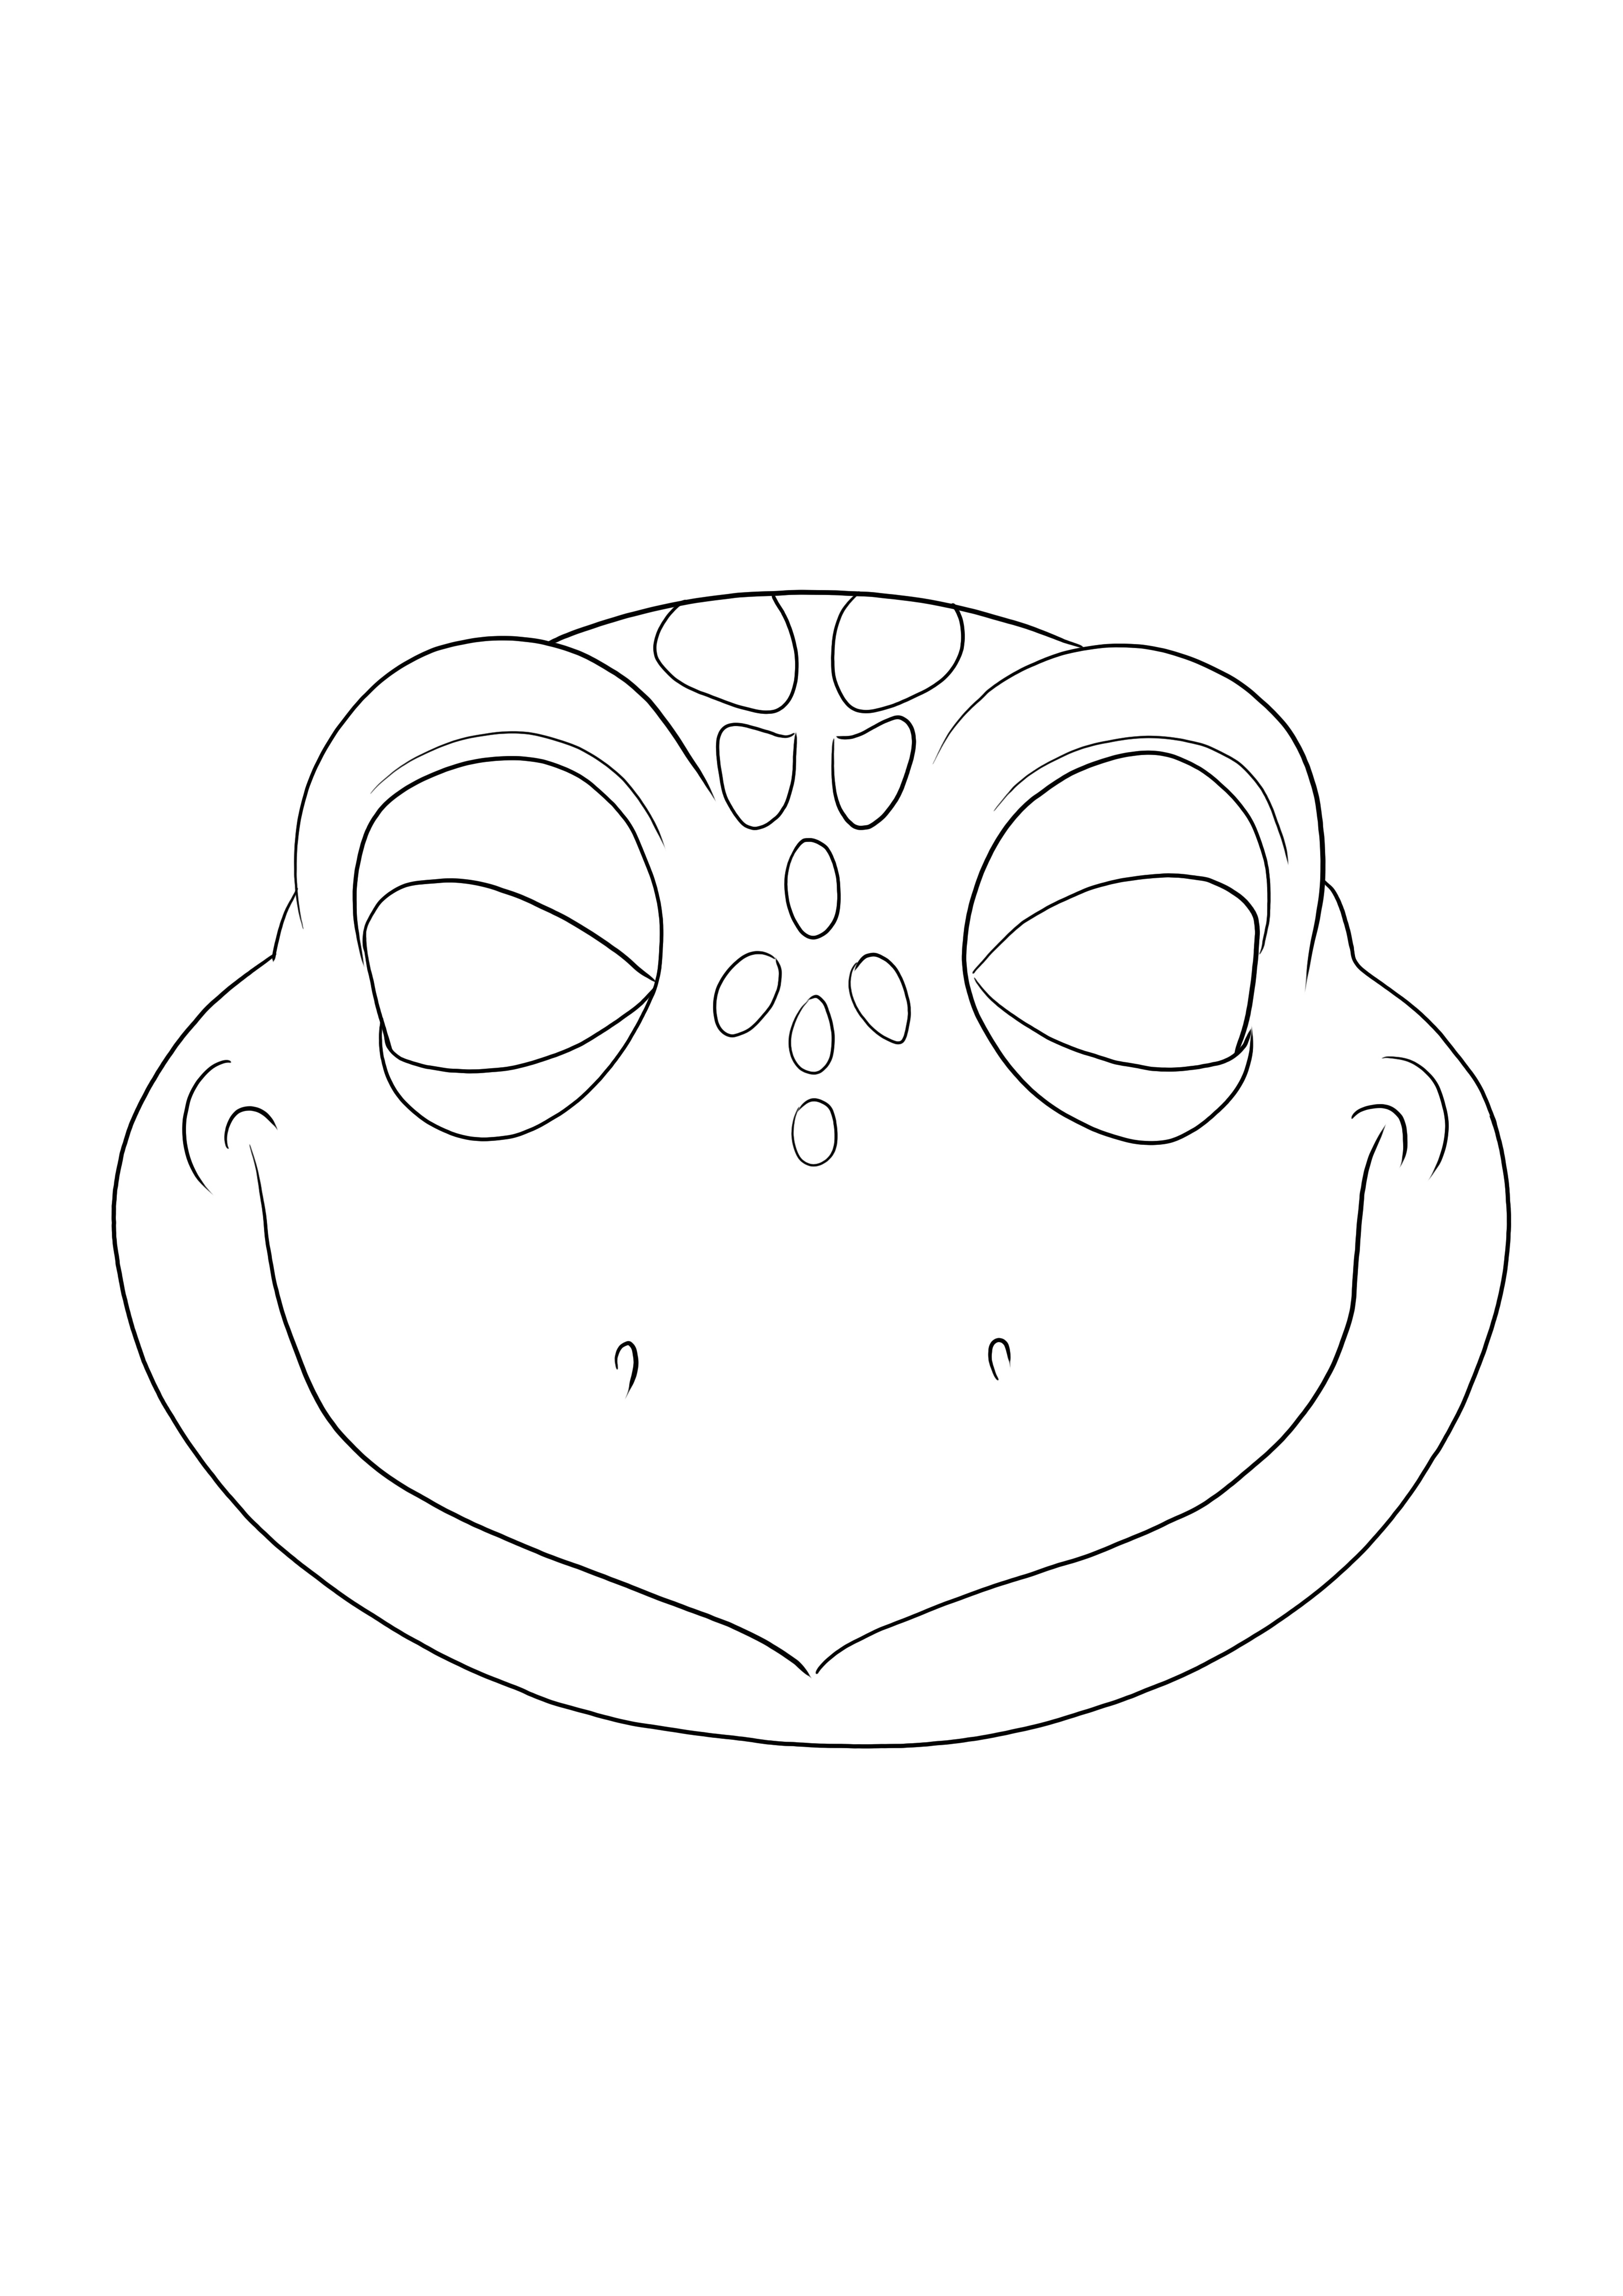 Sencilla hoja para colorear de una Máscara de Tortuga para imprimir o descargar gratis